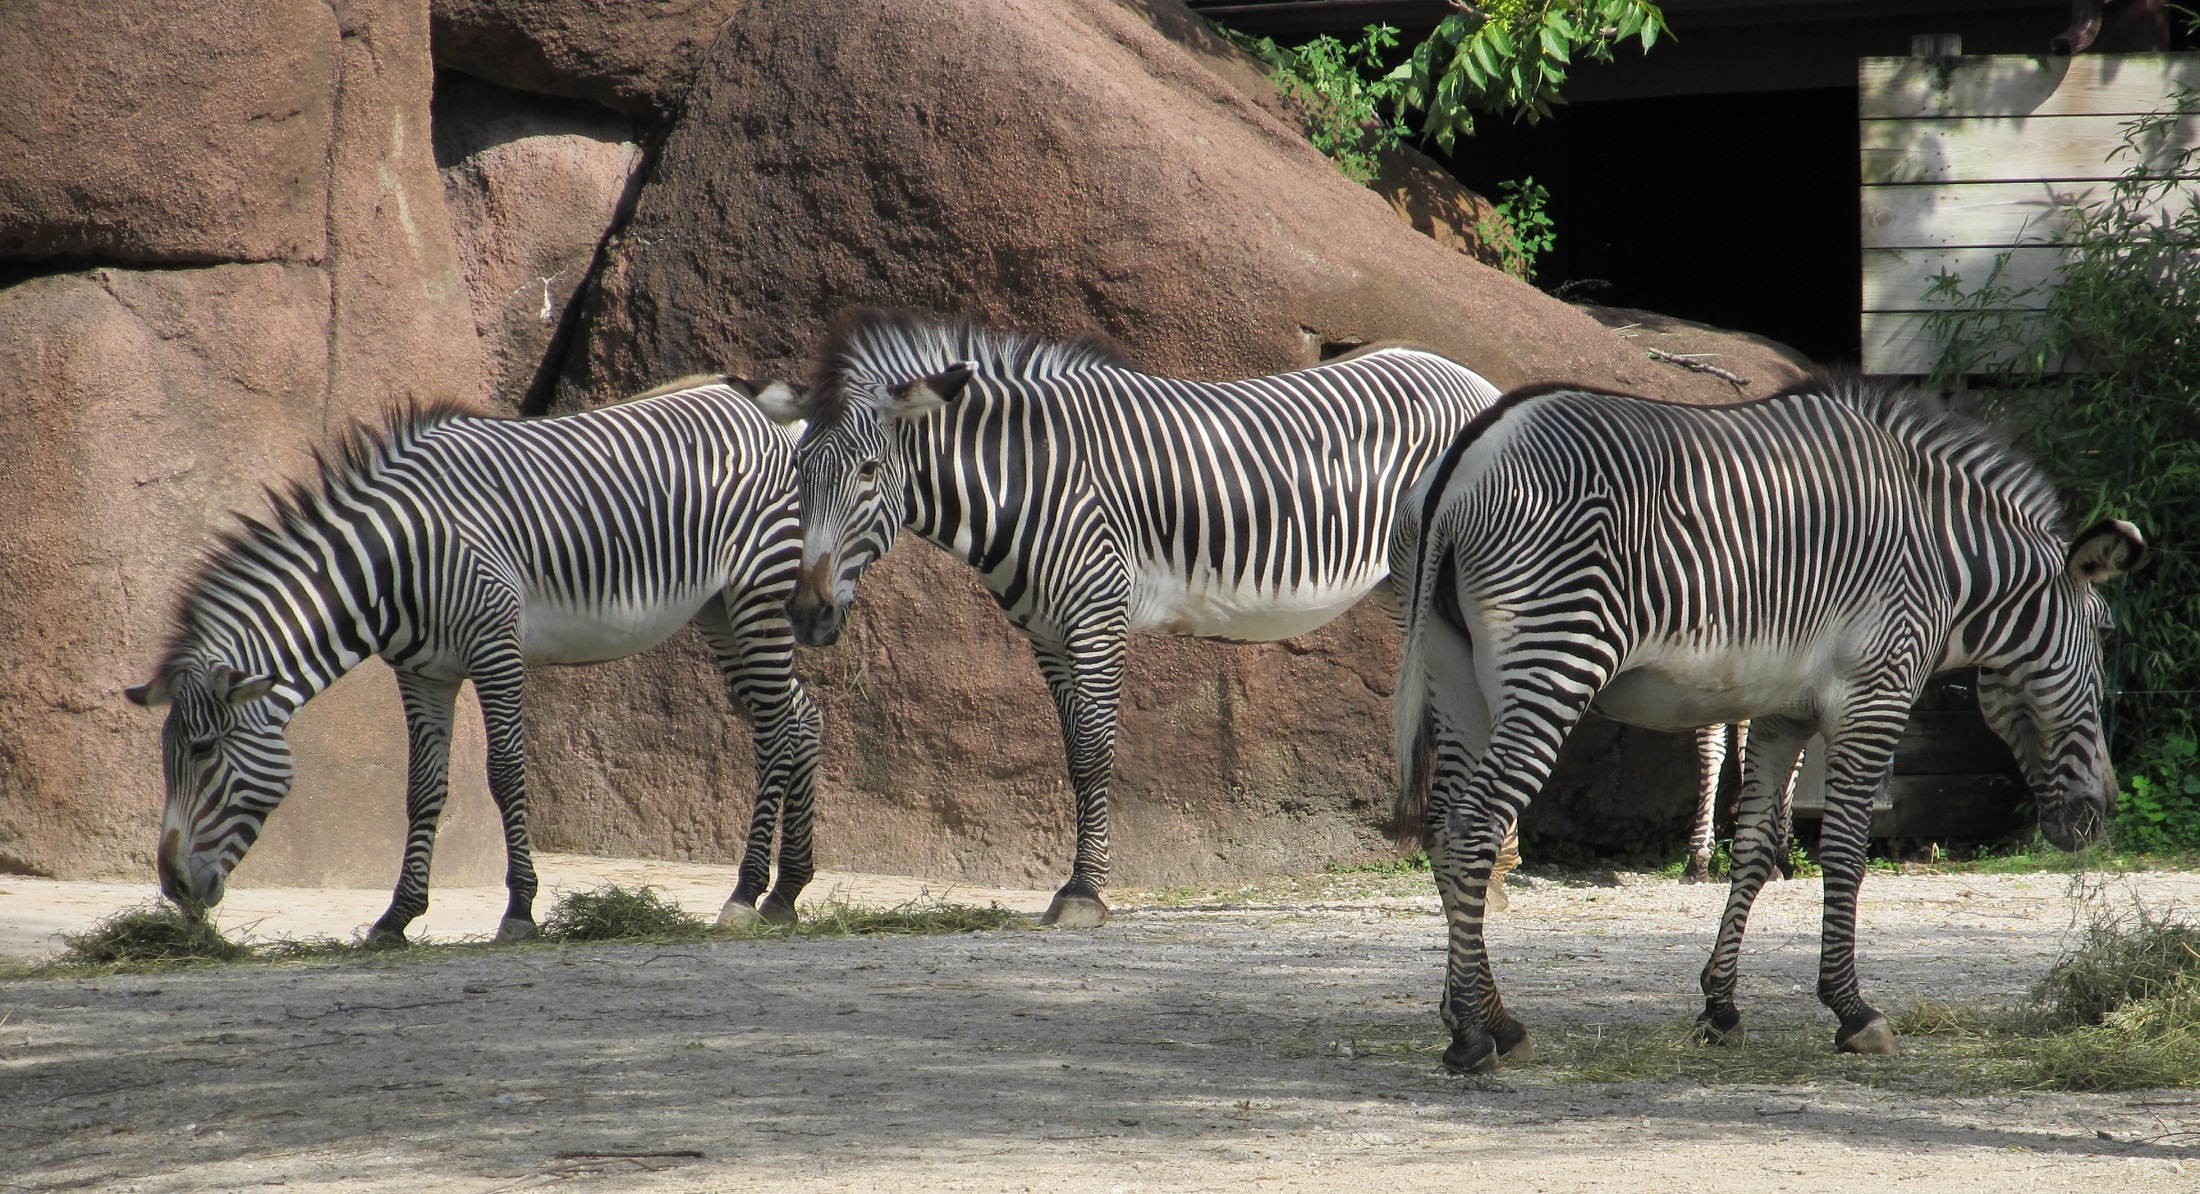 Zebras in the zoo photo